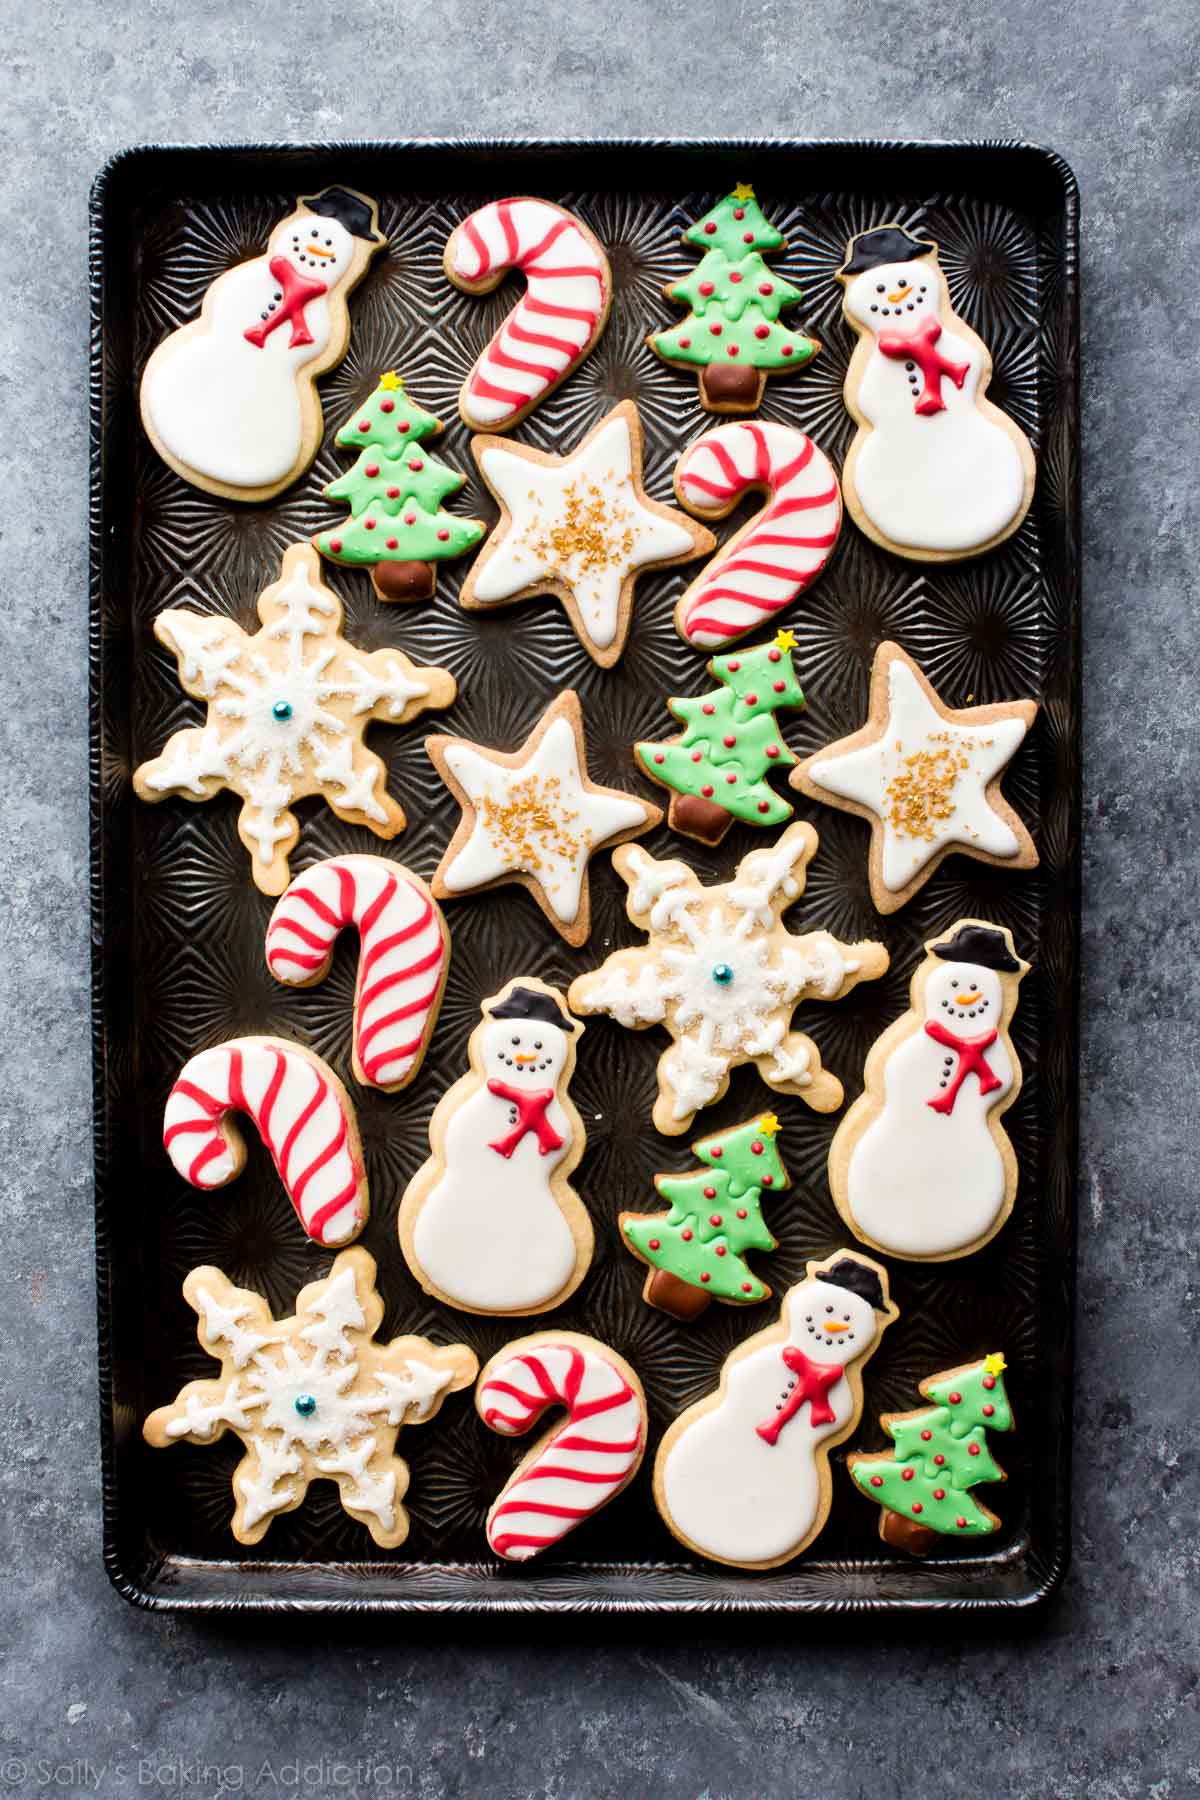 Créez de magnifiques biscuits au sucre de Noël décorés avec cette impressionnante recette de biscuit au sucre et de glaçage royal! sallysbakingaddiction.com